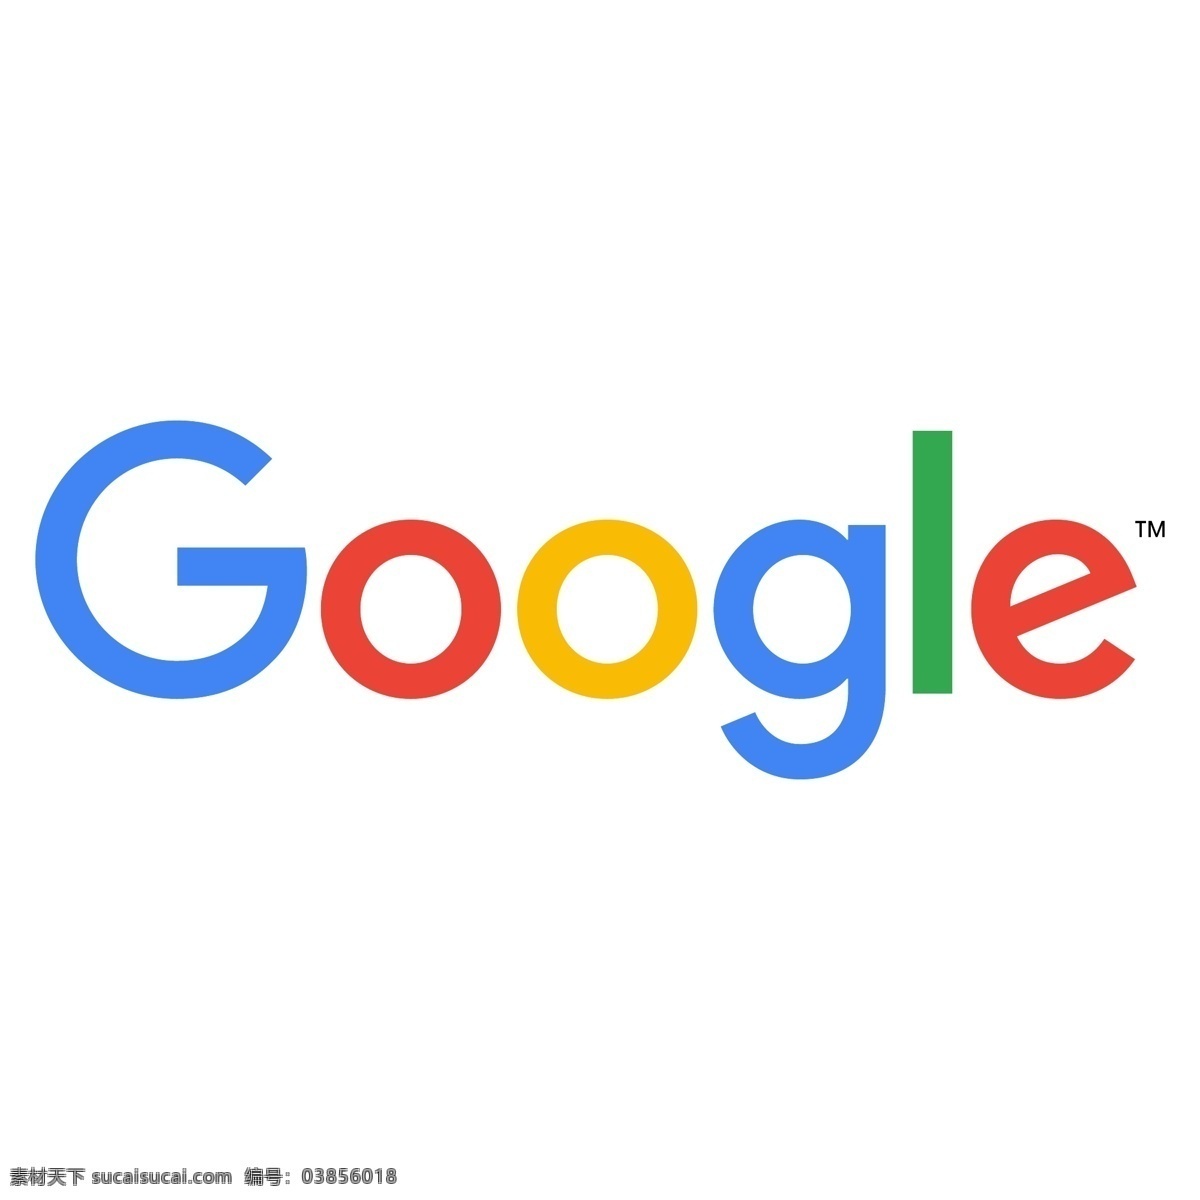 谷歌logo 谷歌 logo 矢量 标志 图形 google logo集合 标志图标 企业